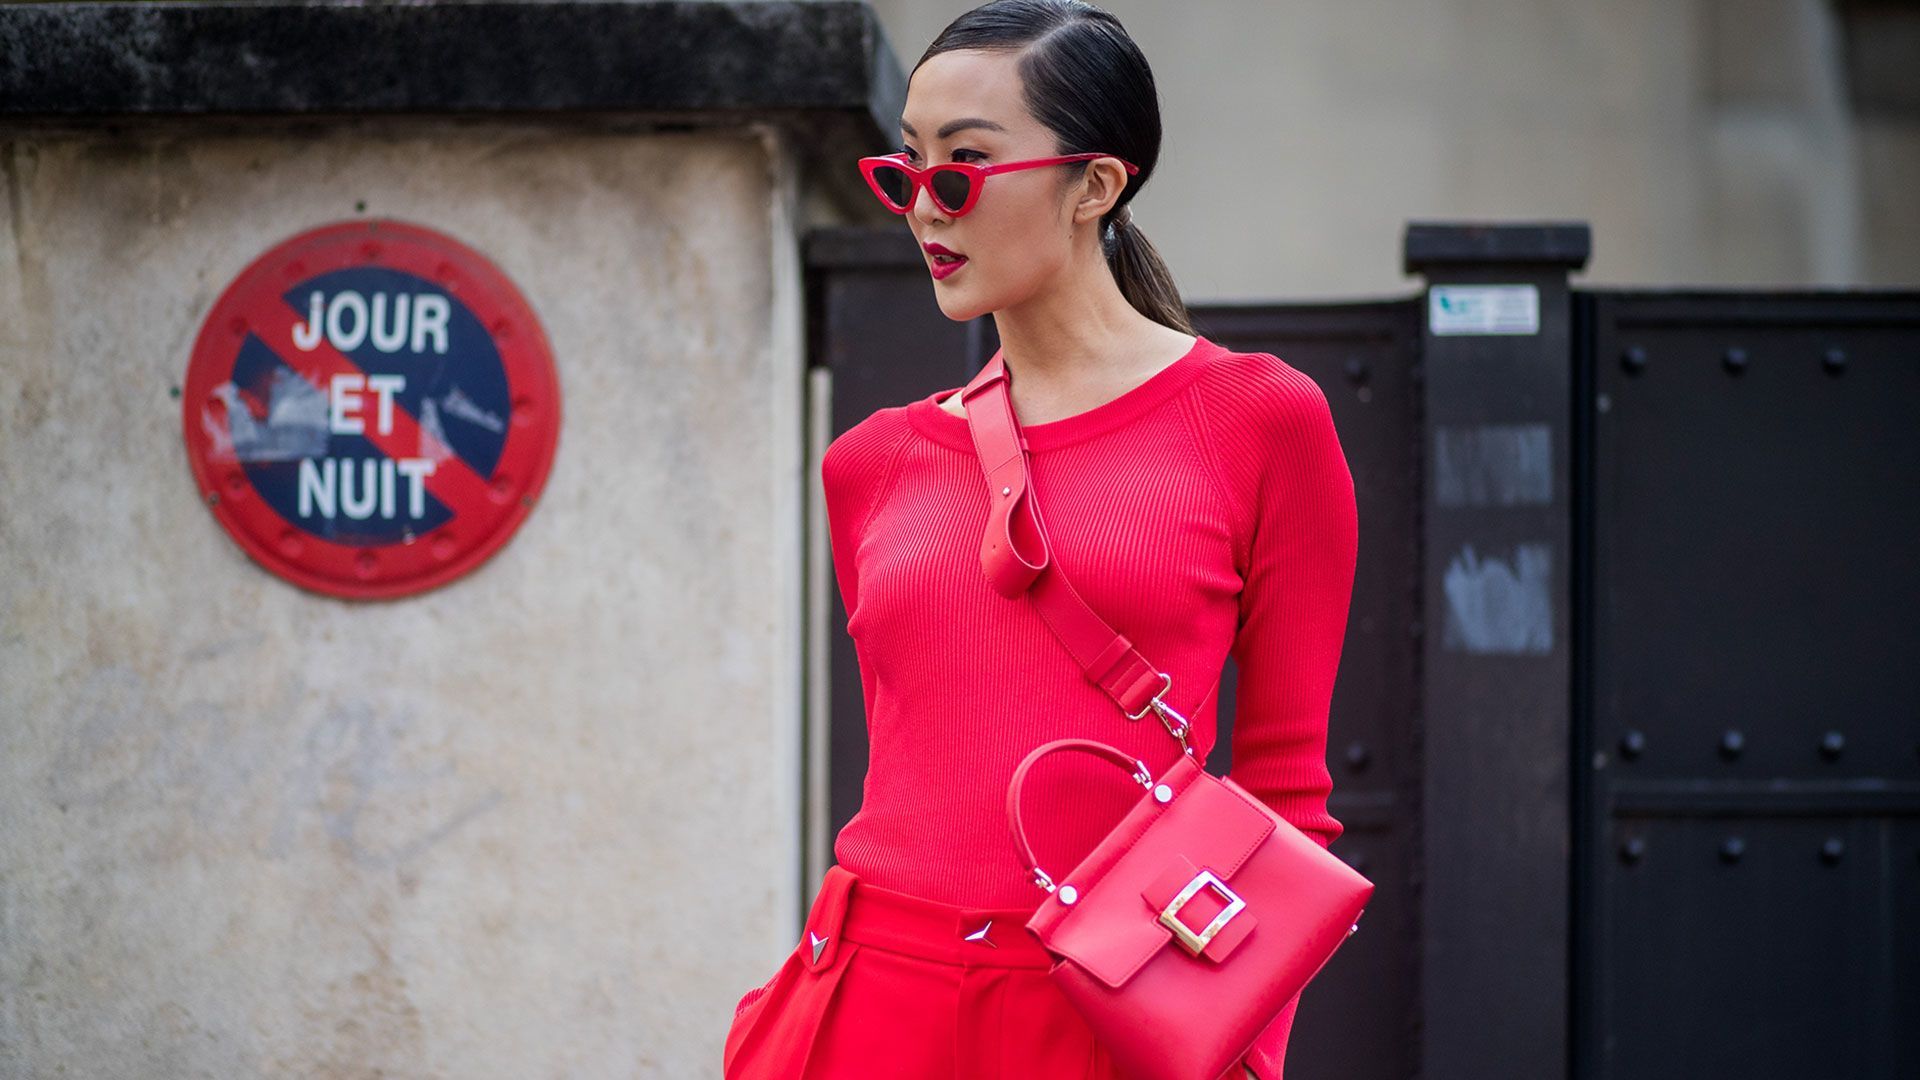 Ciptakan Nuansa Imlek 7 Fashion Item Berwarna Merah